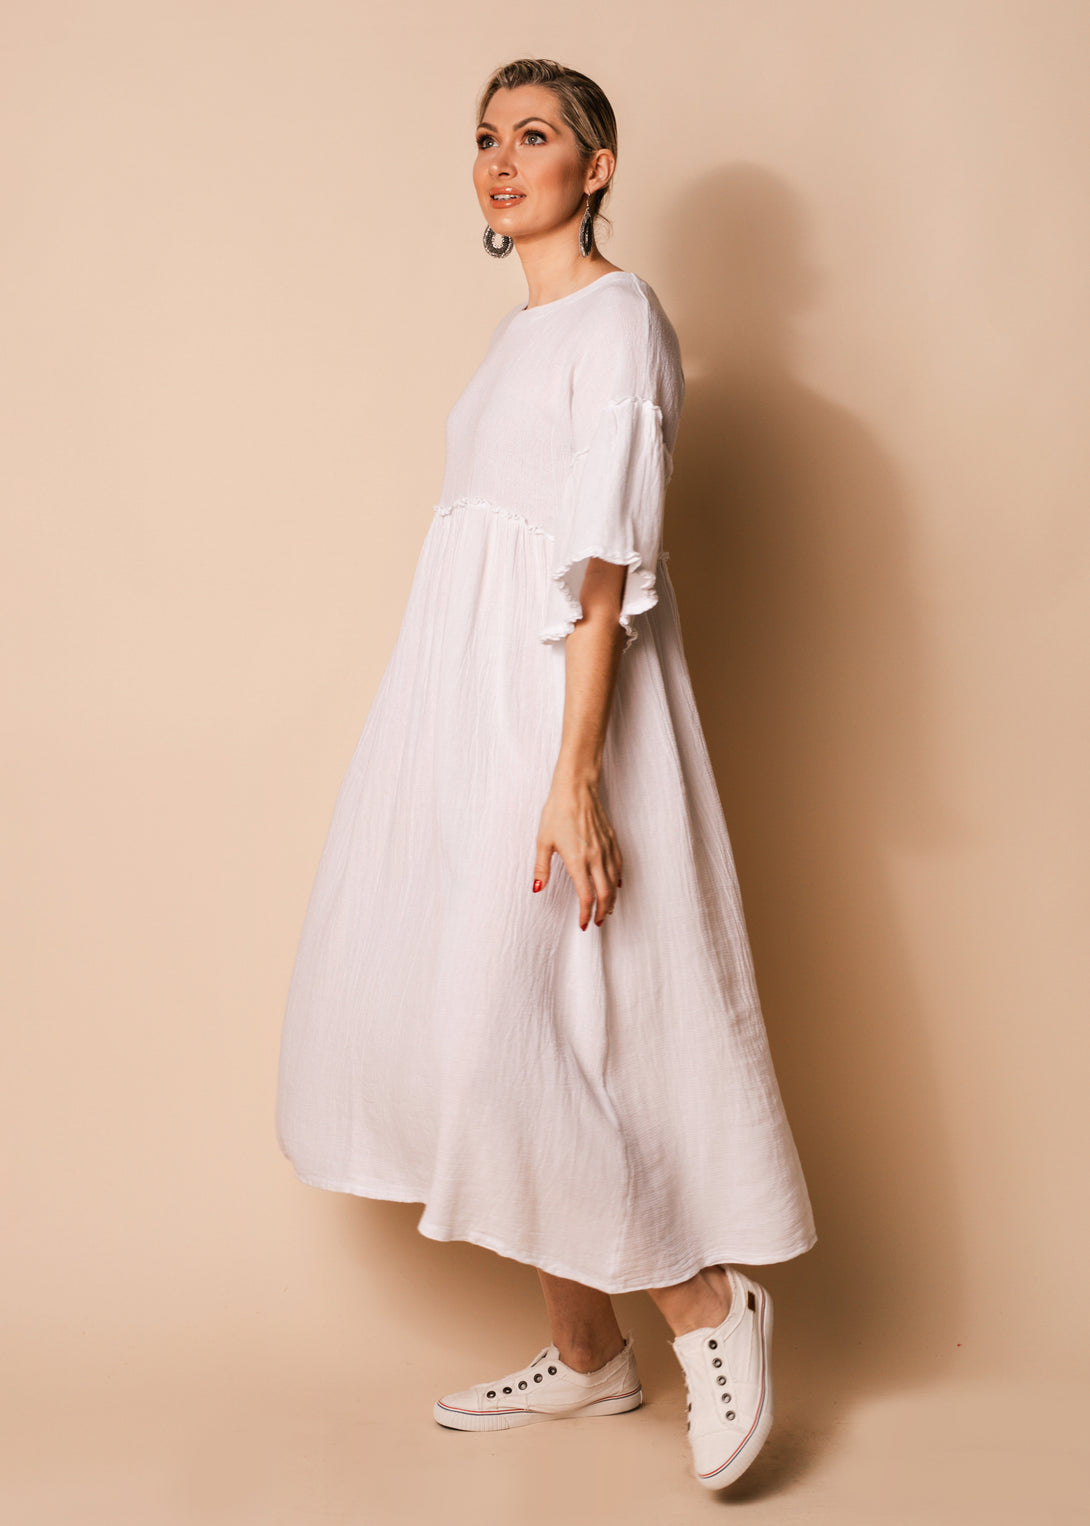 Hira Linen Blend Dress in White - Imagine Fashion